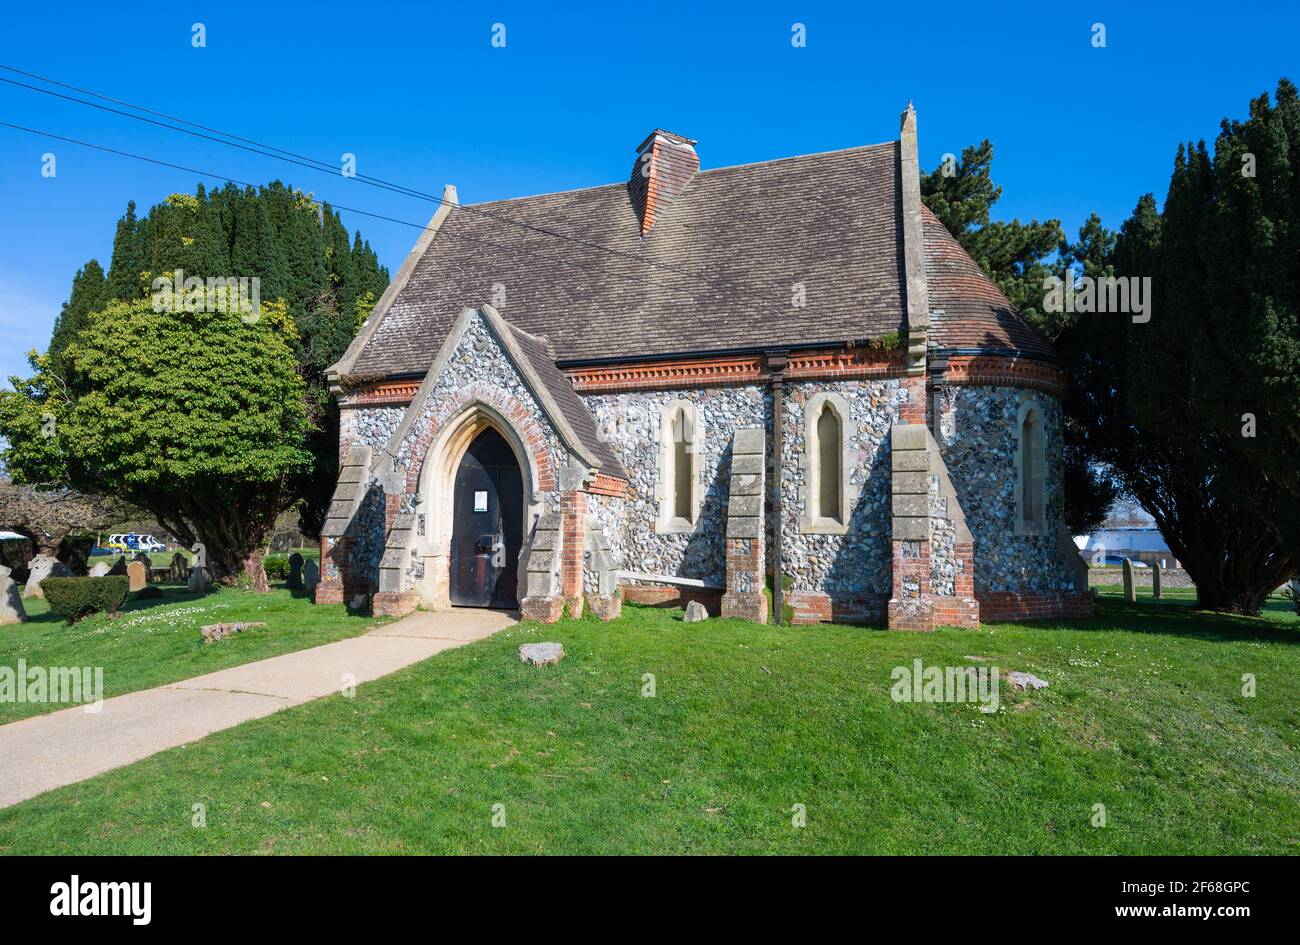 Vecchia cappella in pietra con tetto in tegole al Cimitero di Littlehampton, Littlehampton, West Sussex, Inghilterra, Regno Unito. Foto Stock